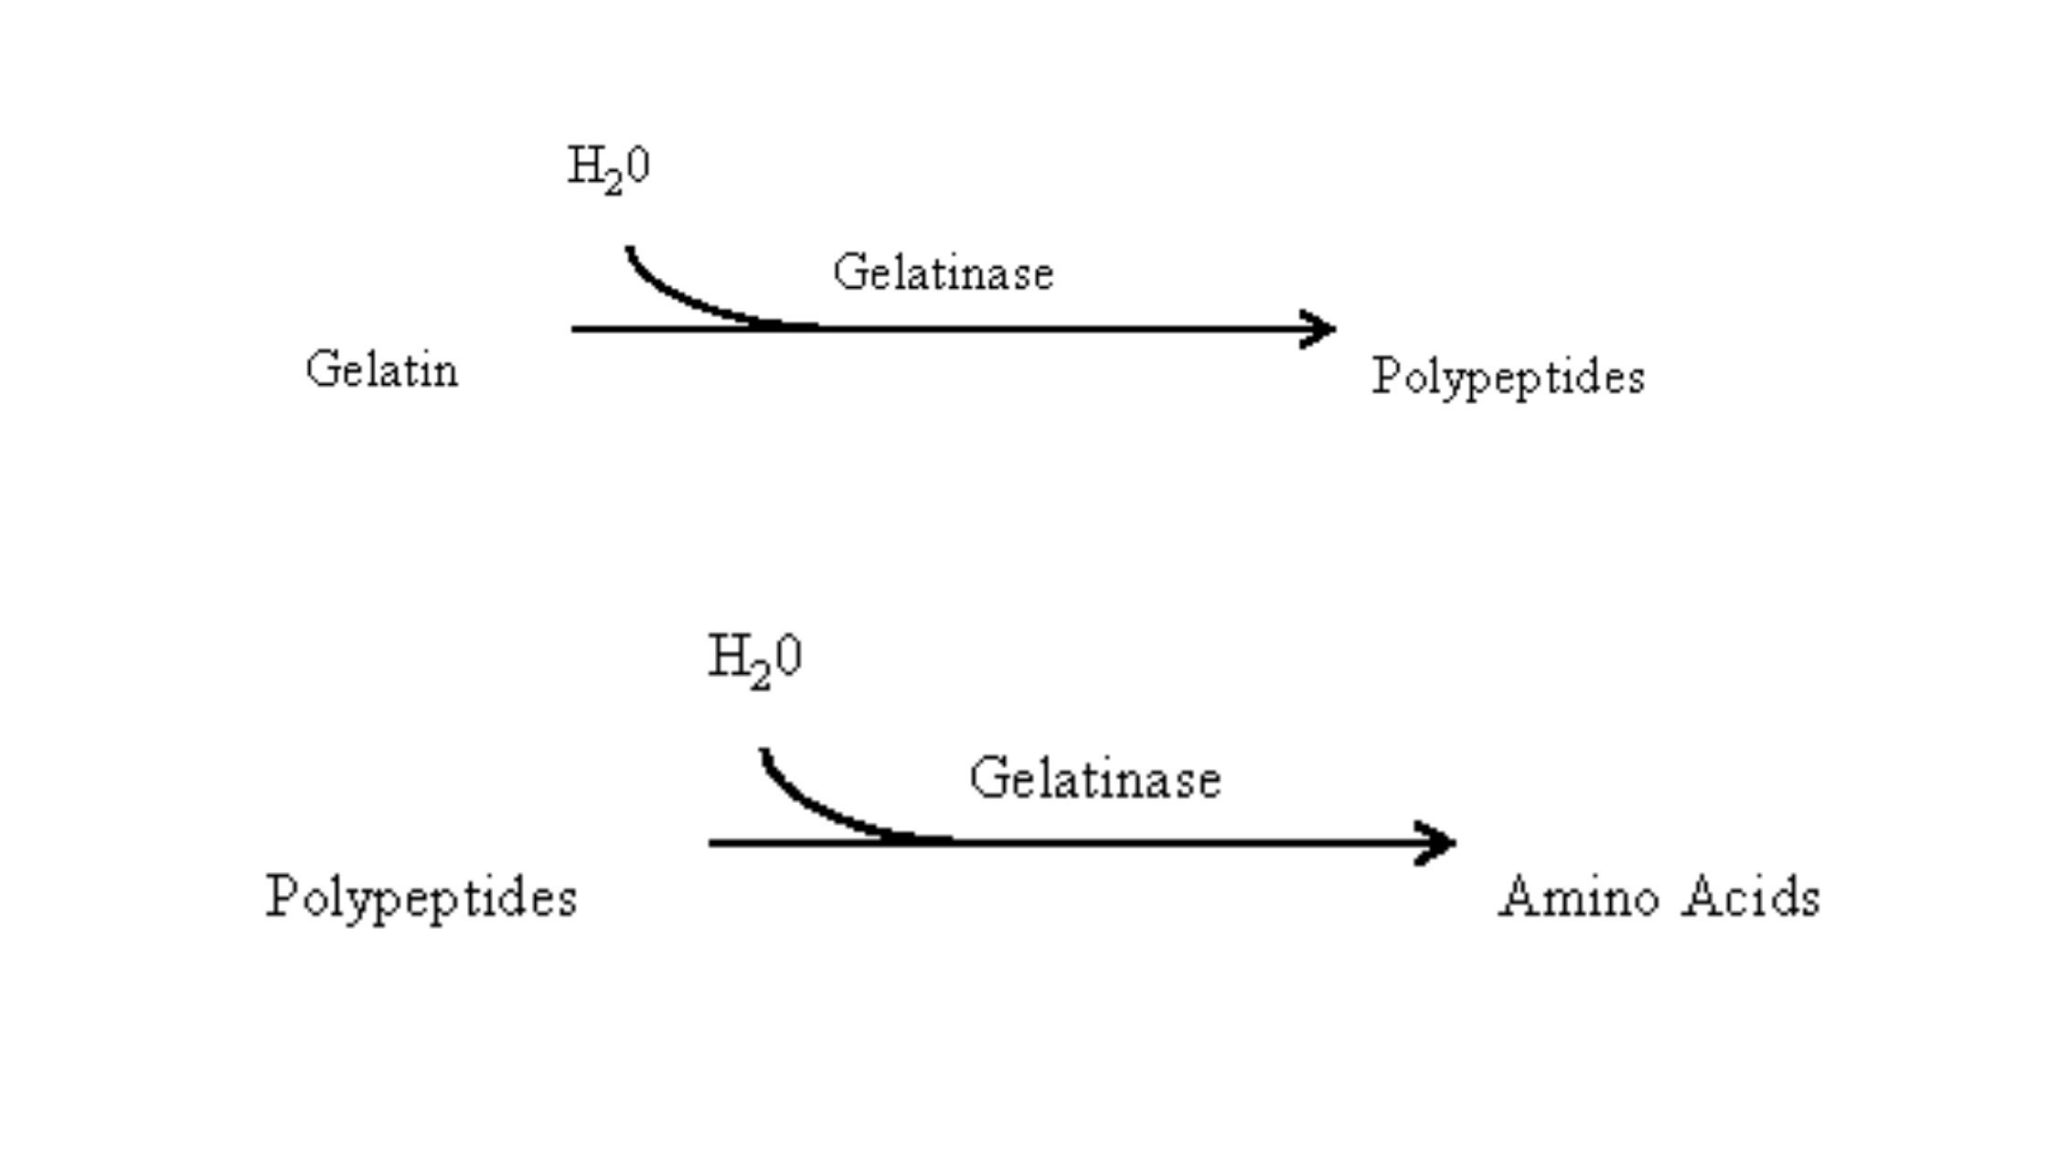 gelatin hydrolysis test